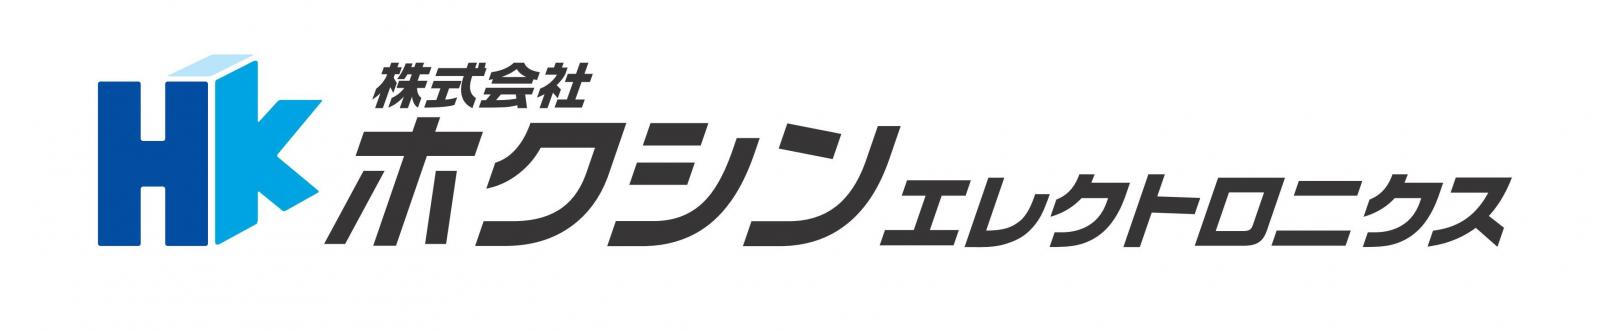 ロゴ:株式会社ホクシンエレクトロニクス